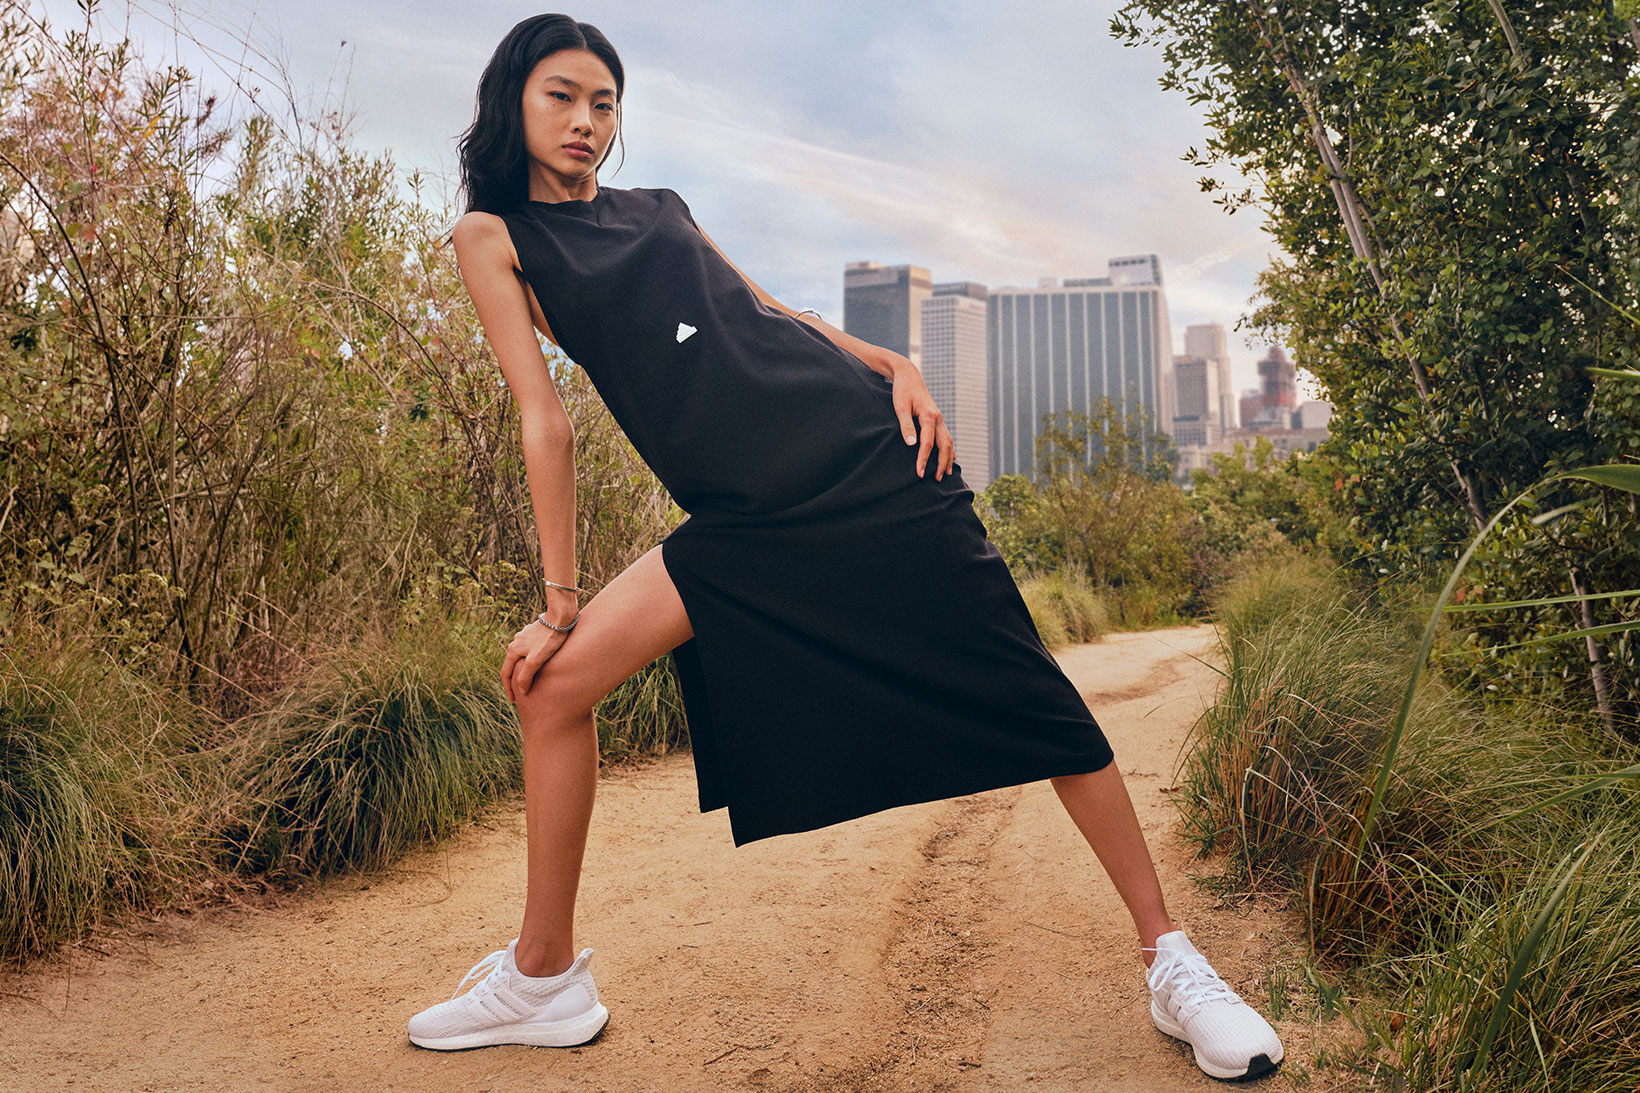  adidas коллекция платье игравкальмара топ кроссовки спорт одежда бренд